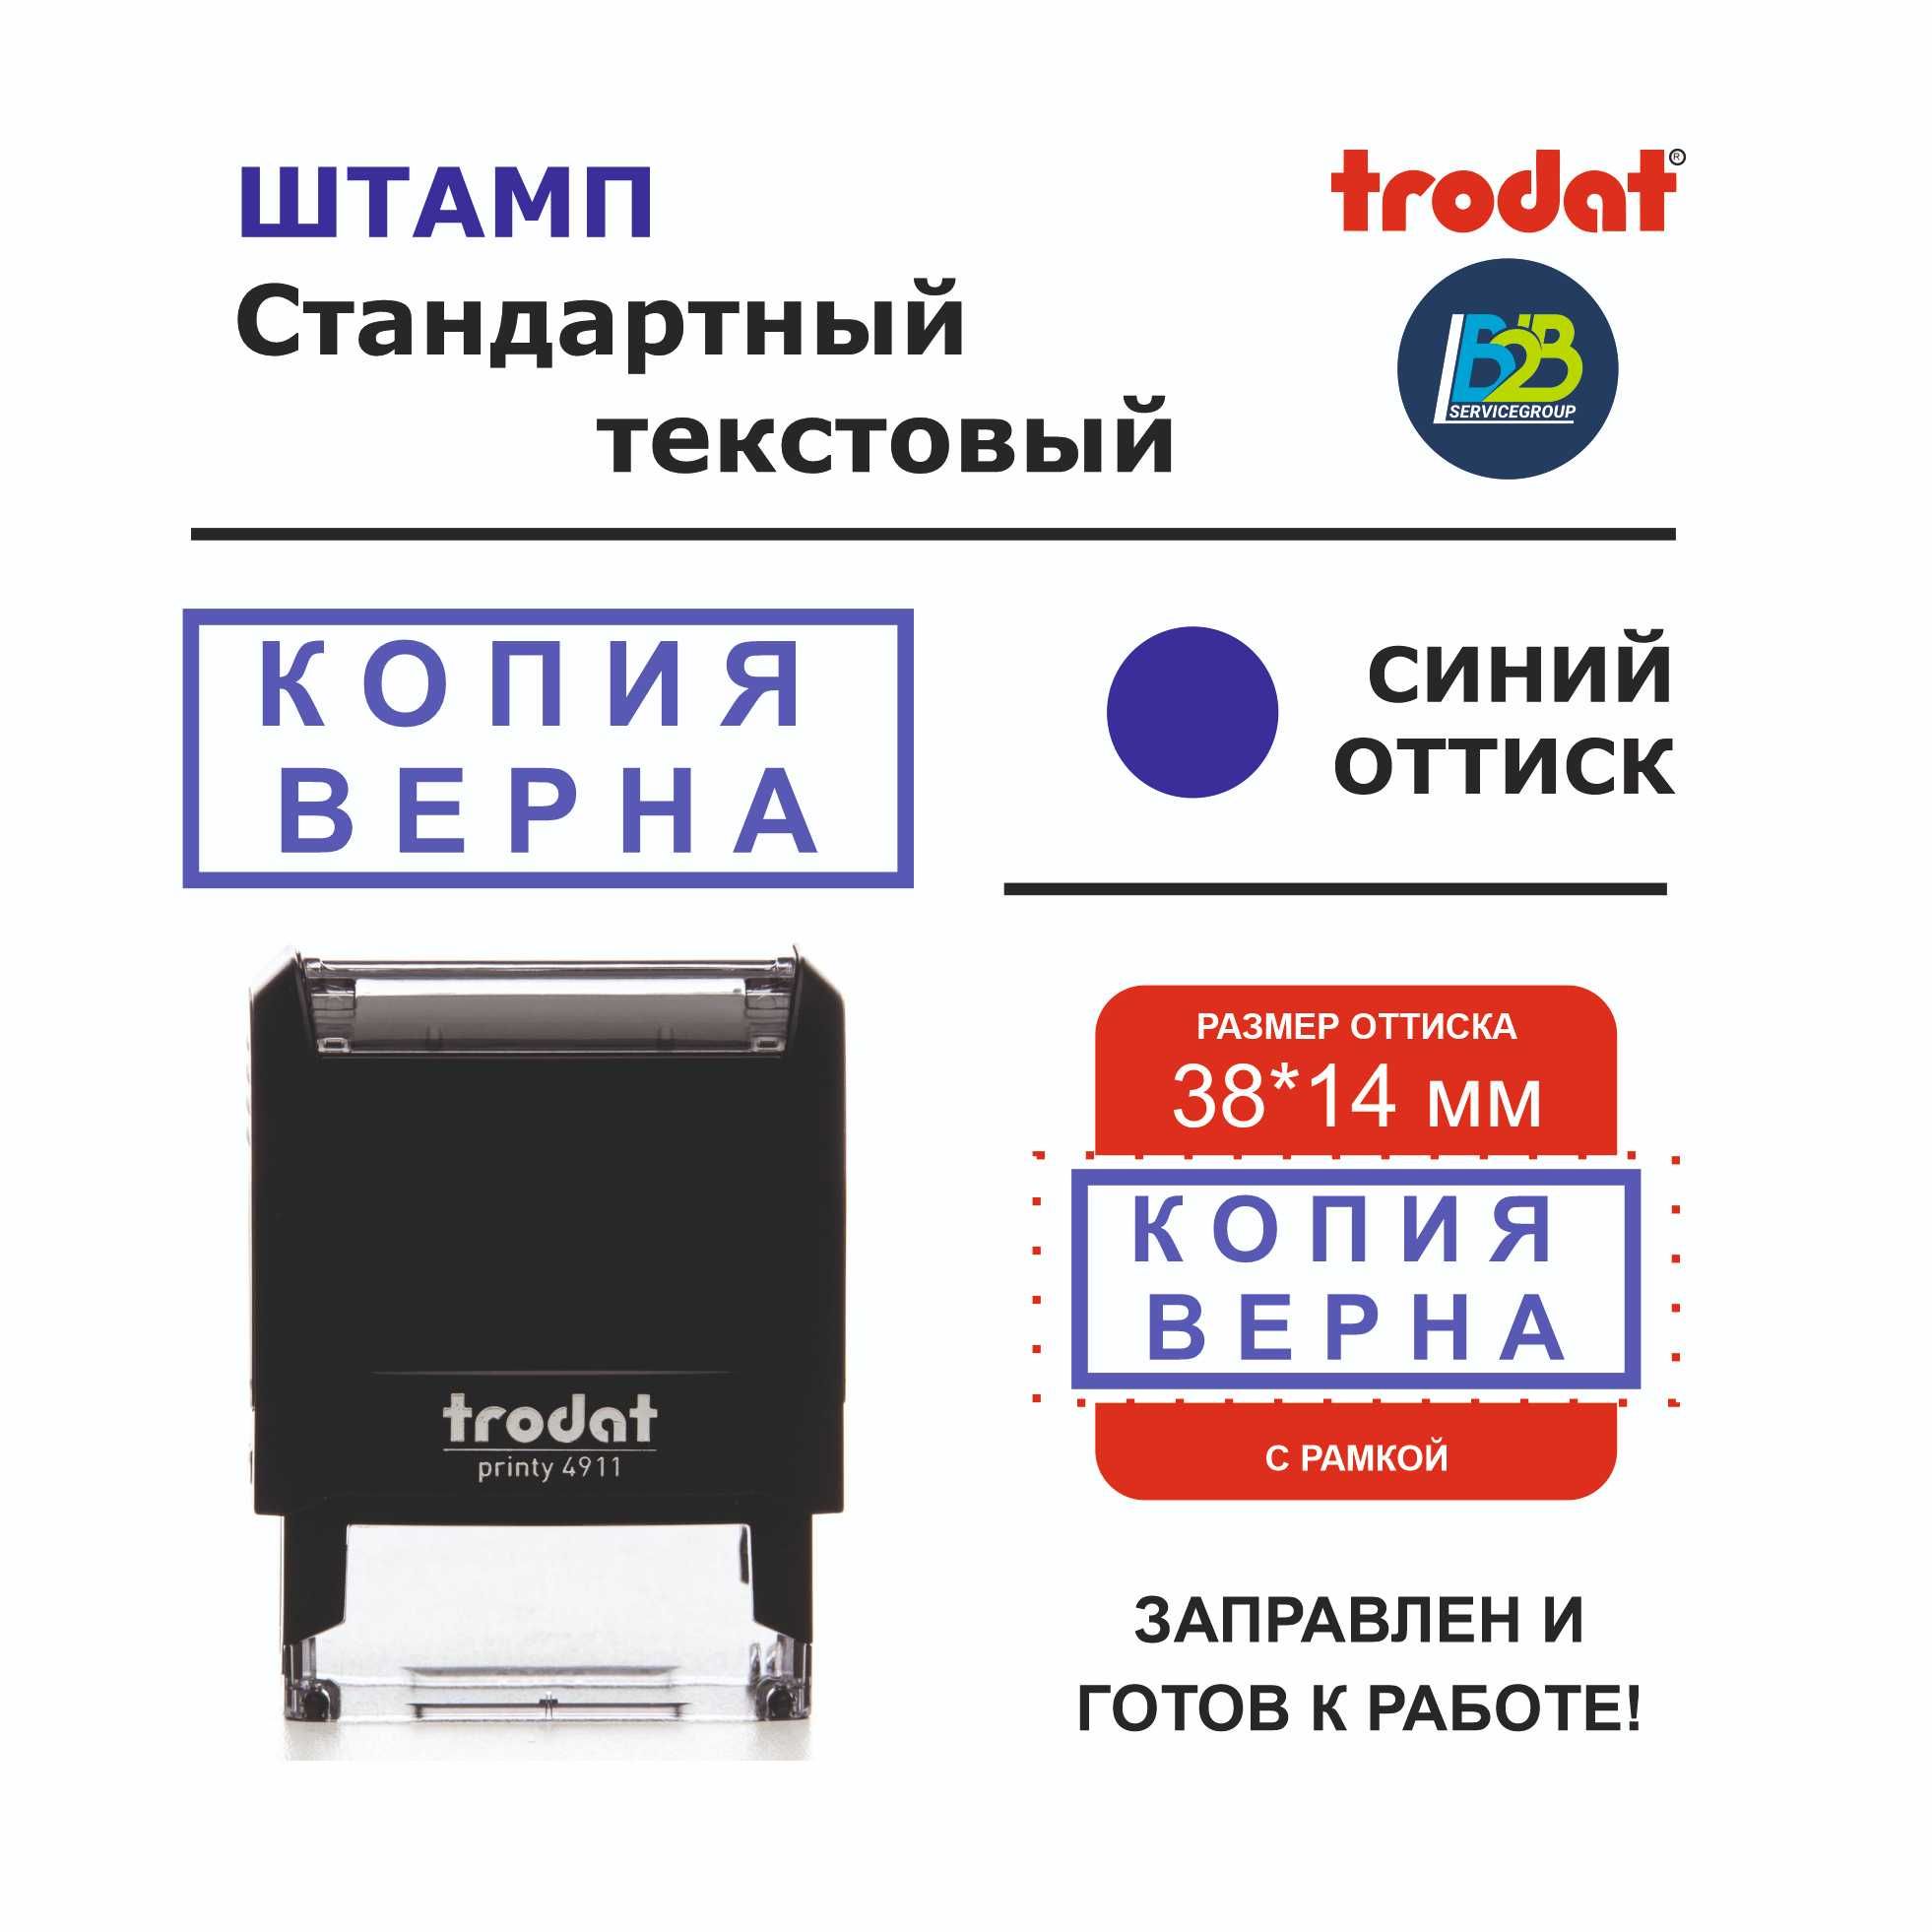 Изготовление печатей, штампов, полиграфия с доставкой по городу Алматы